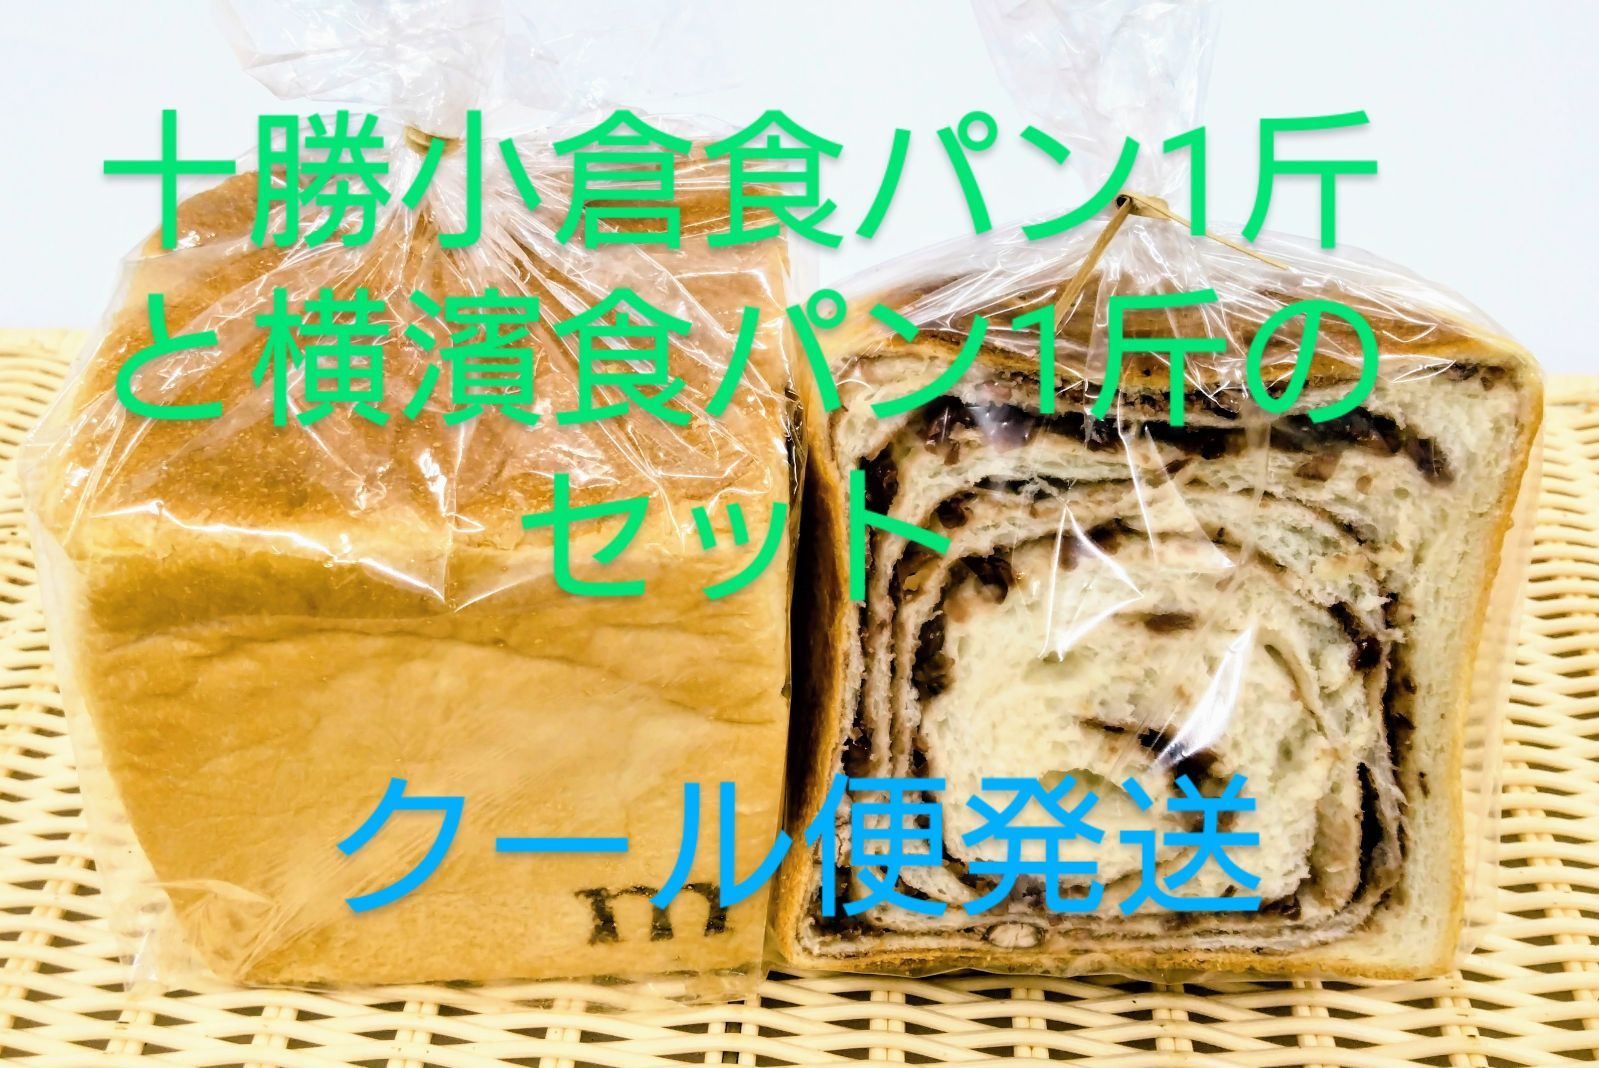 和風 横濱食パン 明太チーズ プレミアムショコラ3斤セット - 通販